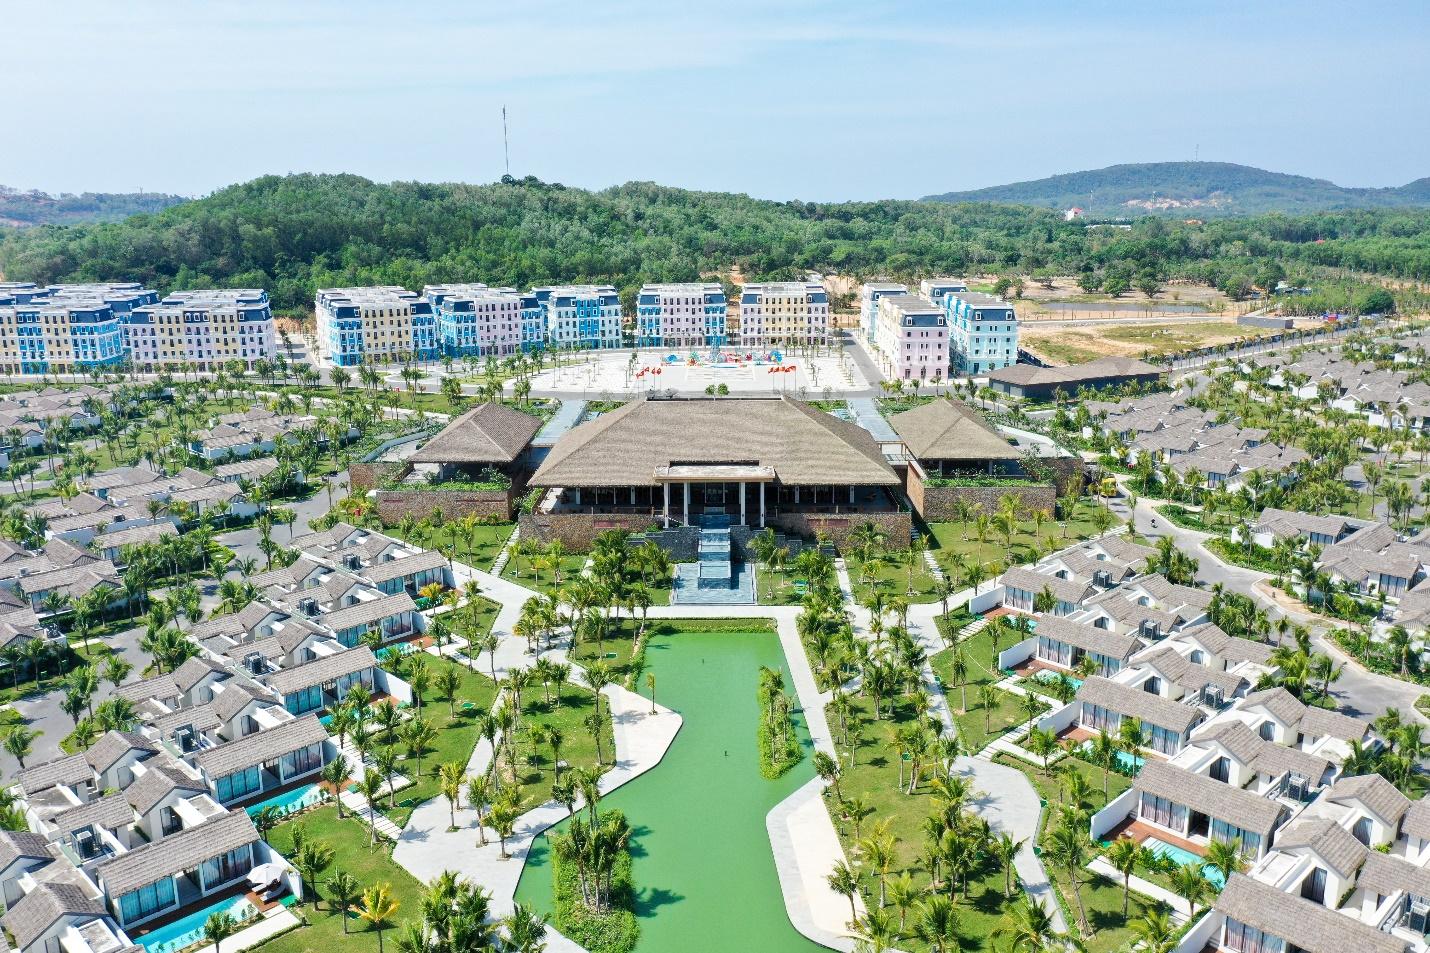 Chiêm ngưỡng những khu nghỉ dưỡng danh giá thế giới khắp 3 miền của Tập đoàn du lịch hàng đầu châu Á - Sun Group - Ảnh 5.